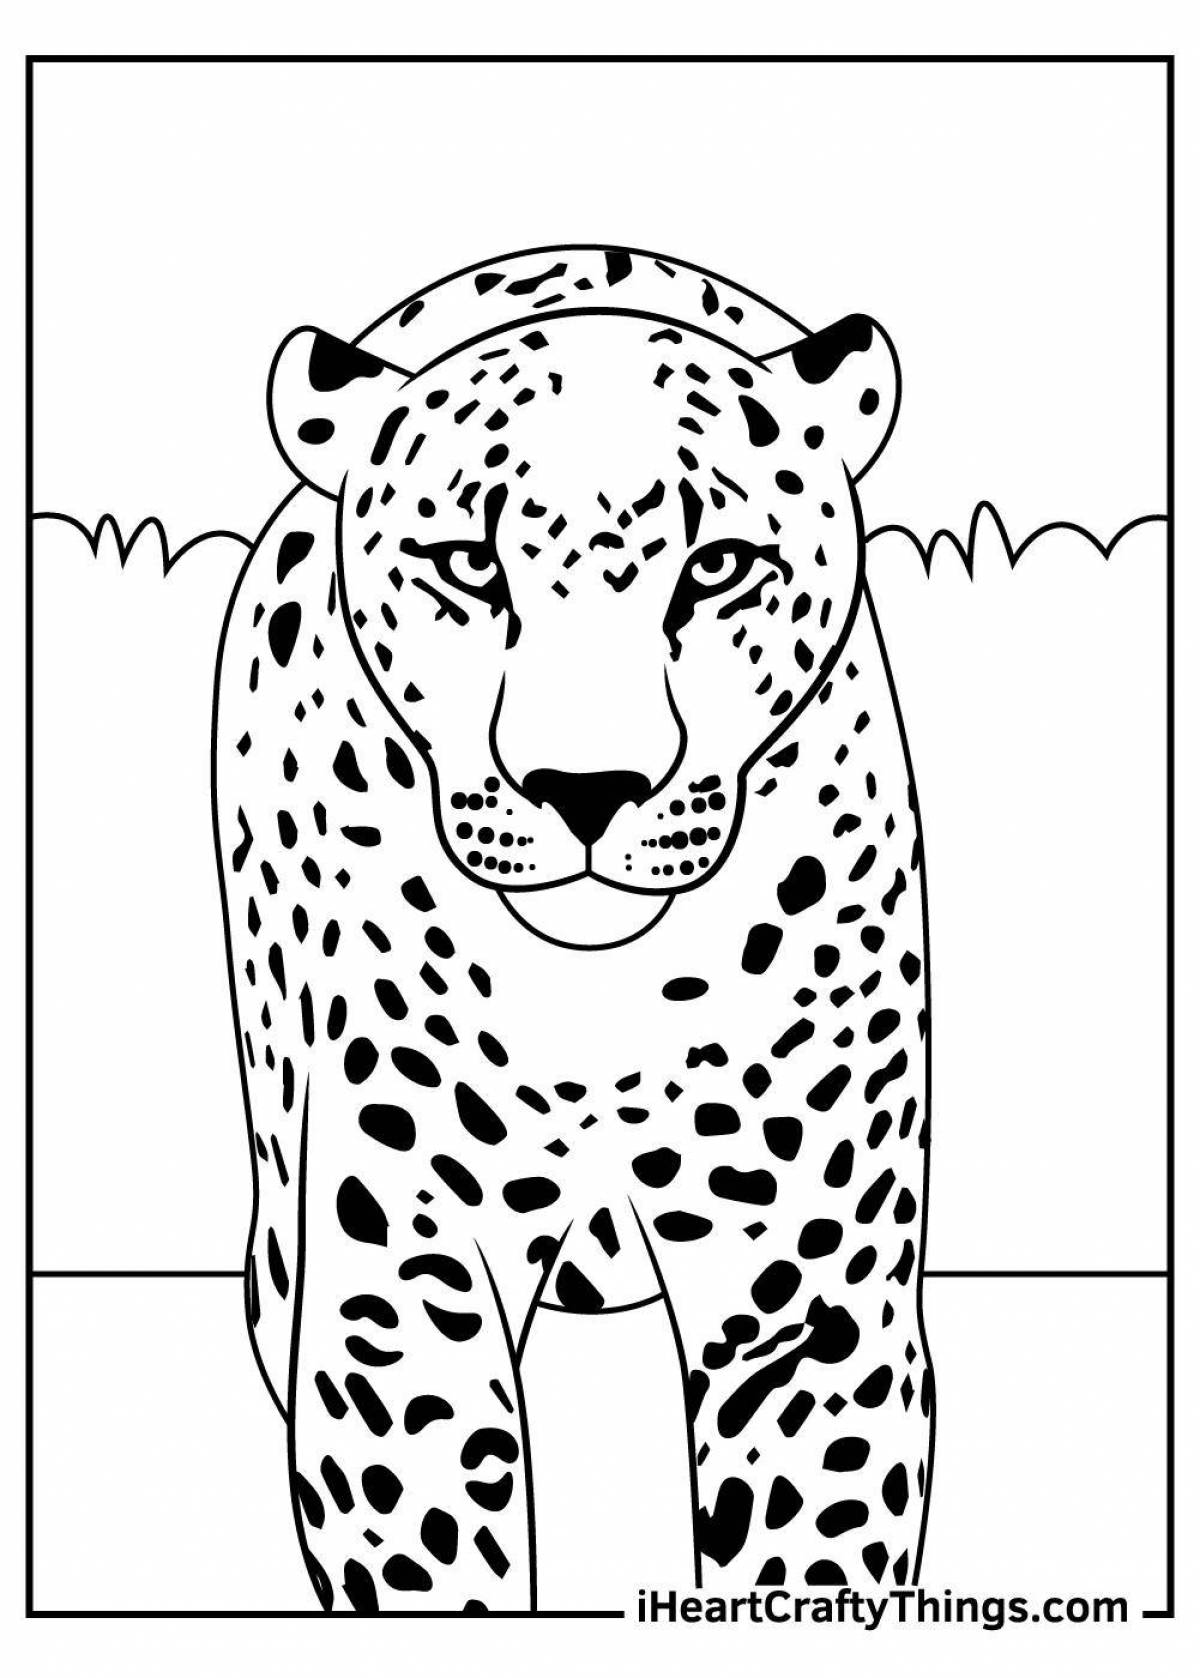 Сложная леопардовая раскраска для детей 5-6 лет